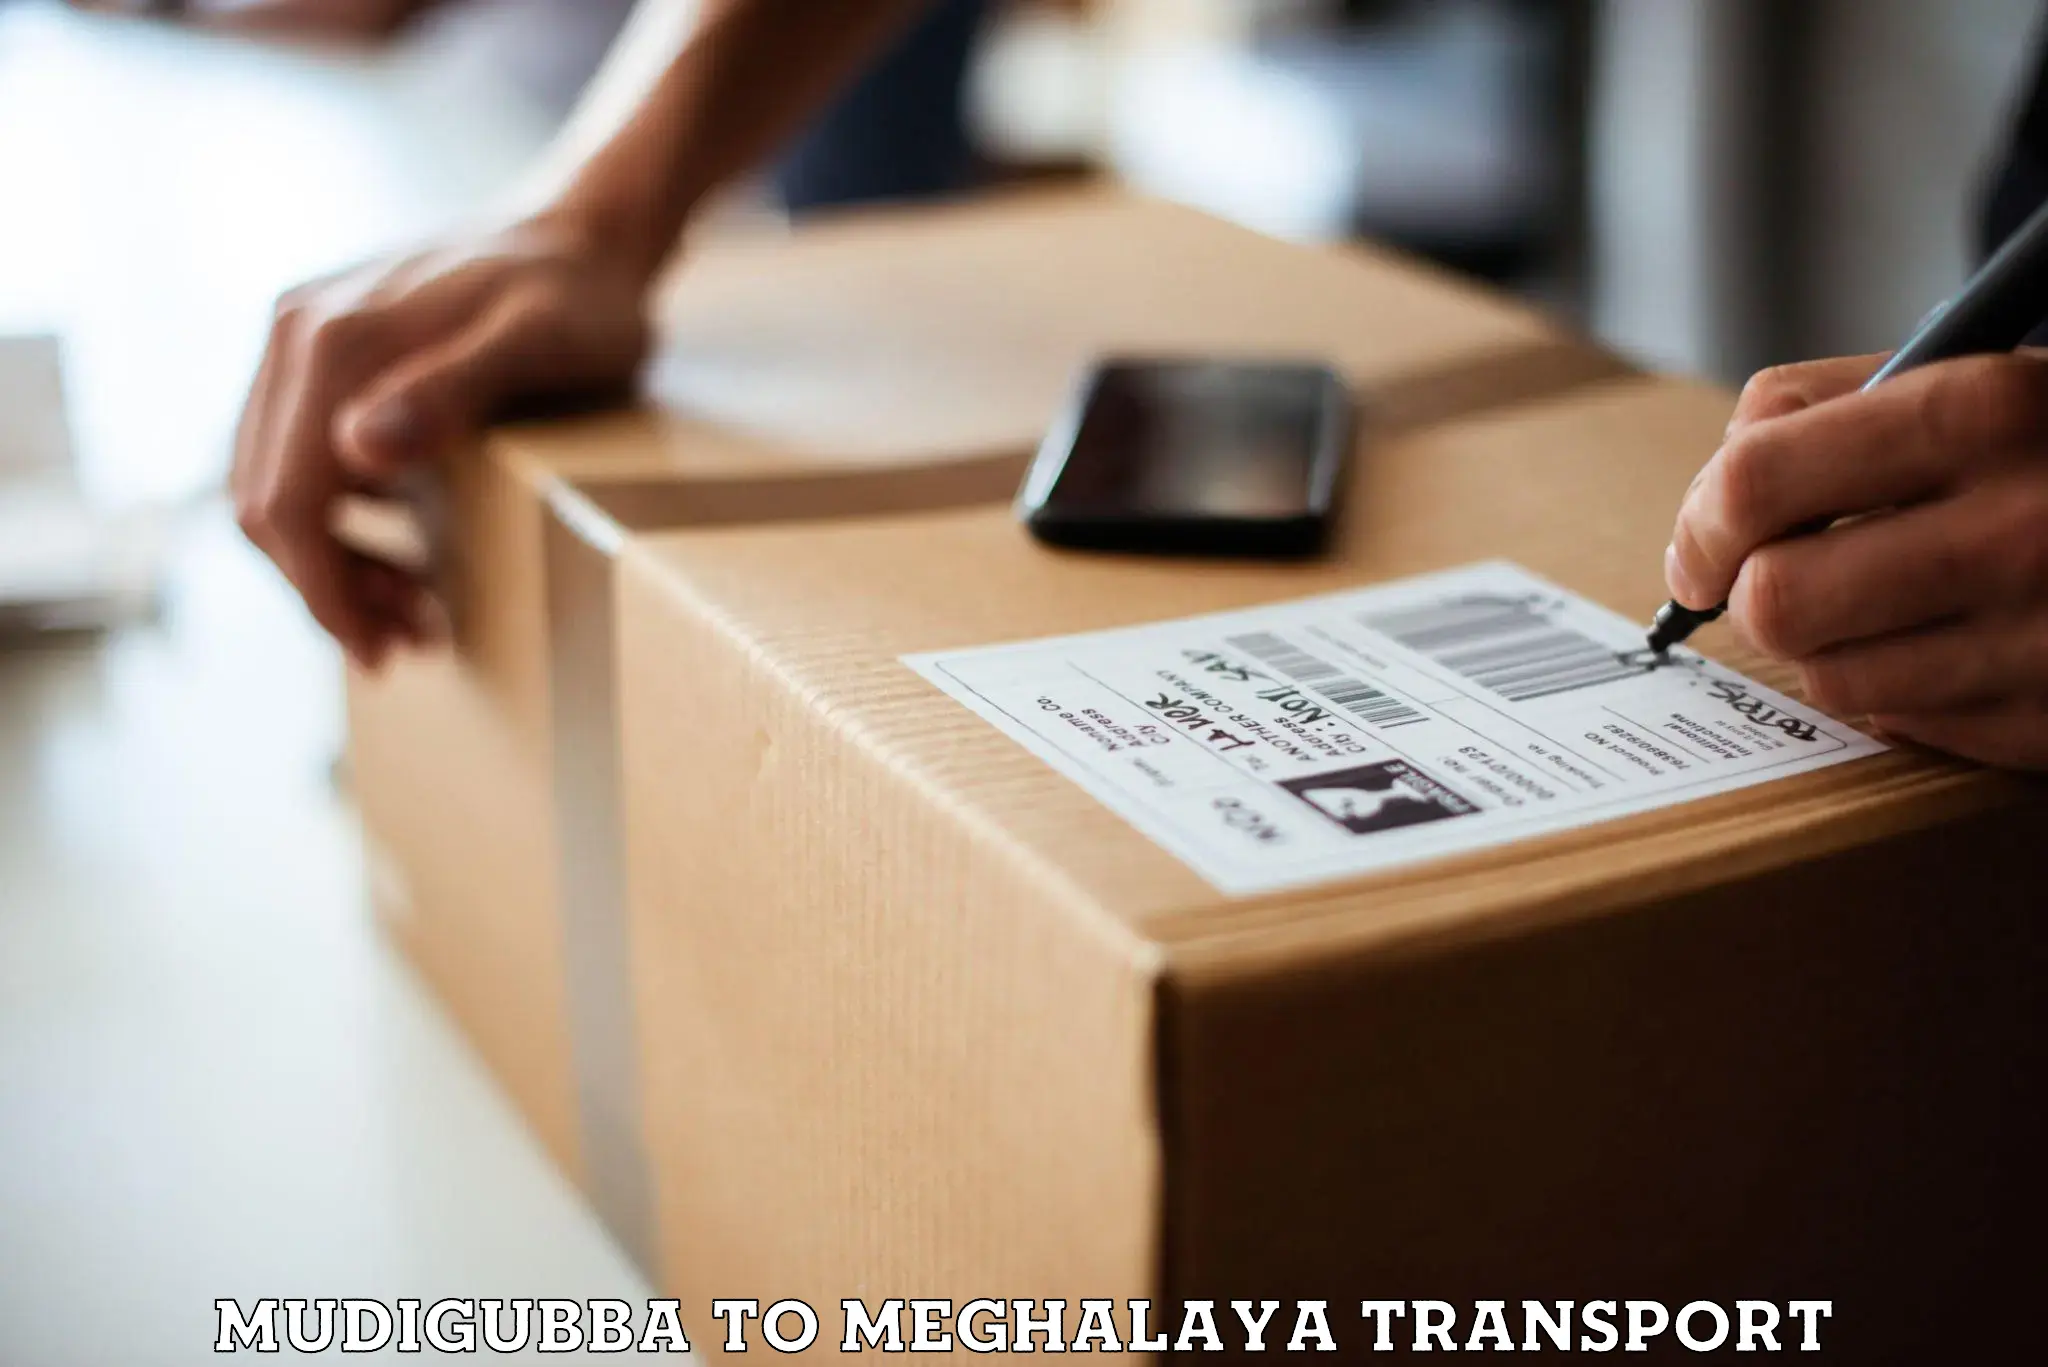 Online transport service Mudigubba to Meghalaya